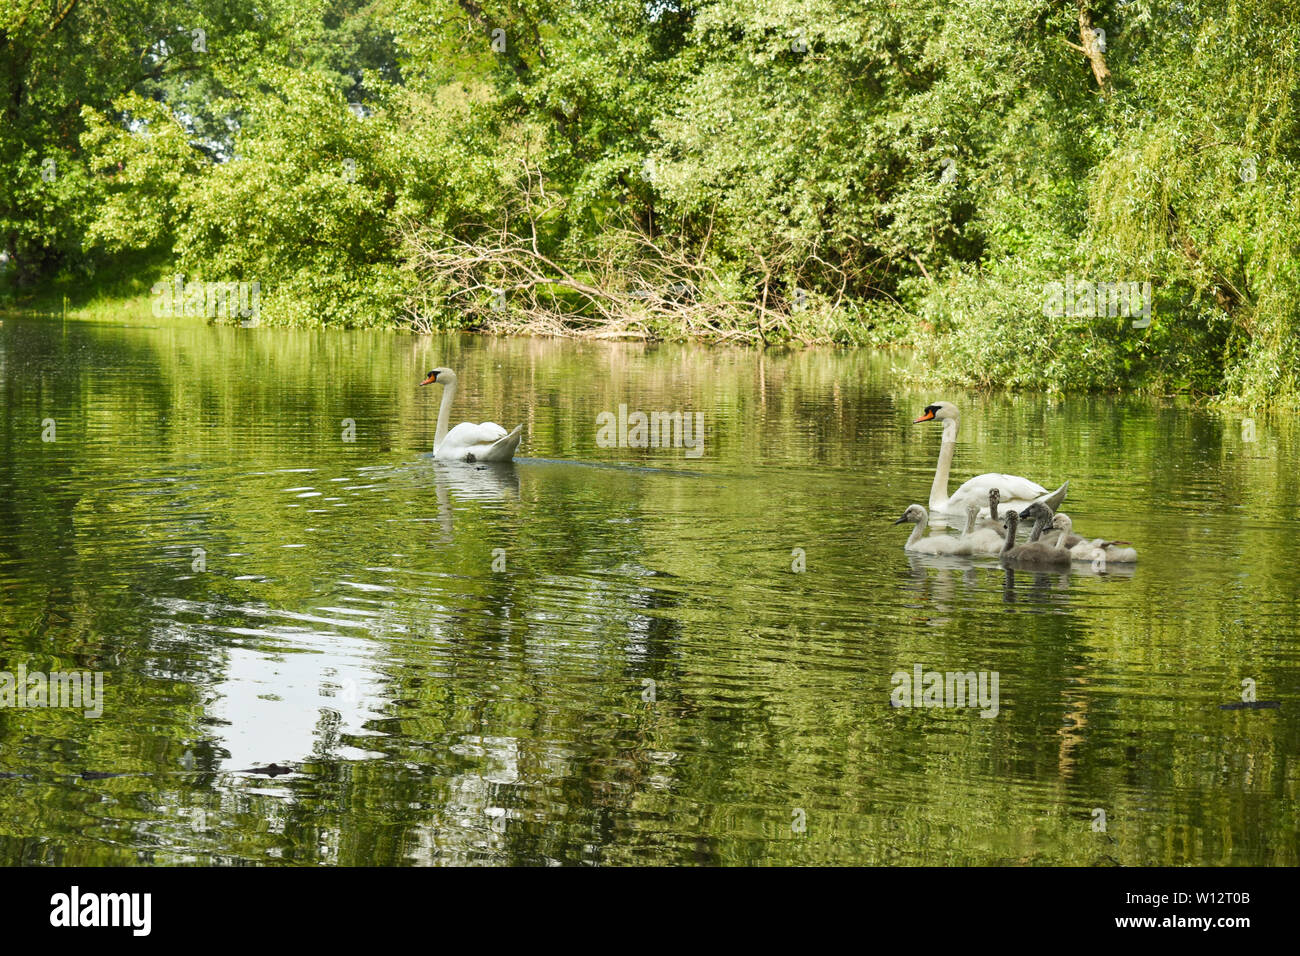 Schwäne schwimmen im See von grünen Bäumen und Sträuchern. Grünes Laub Reflexion über Wasser. Stockfoto